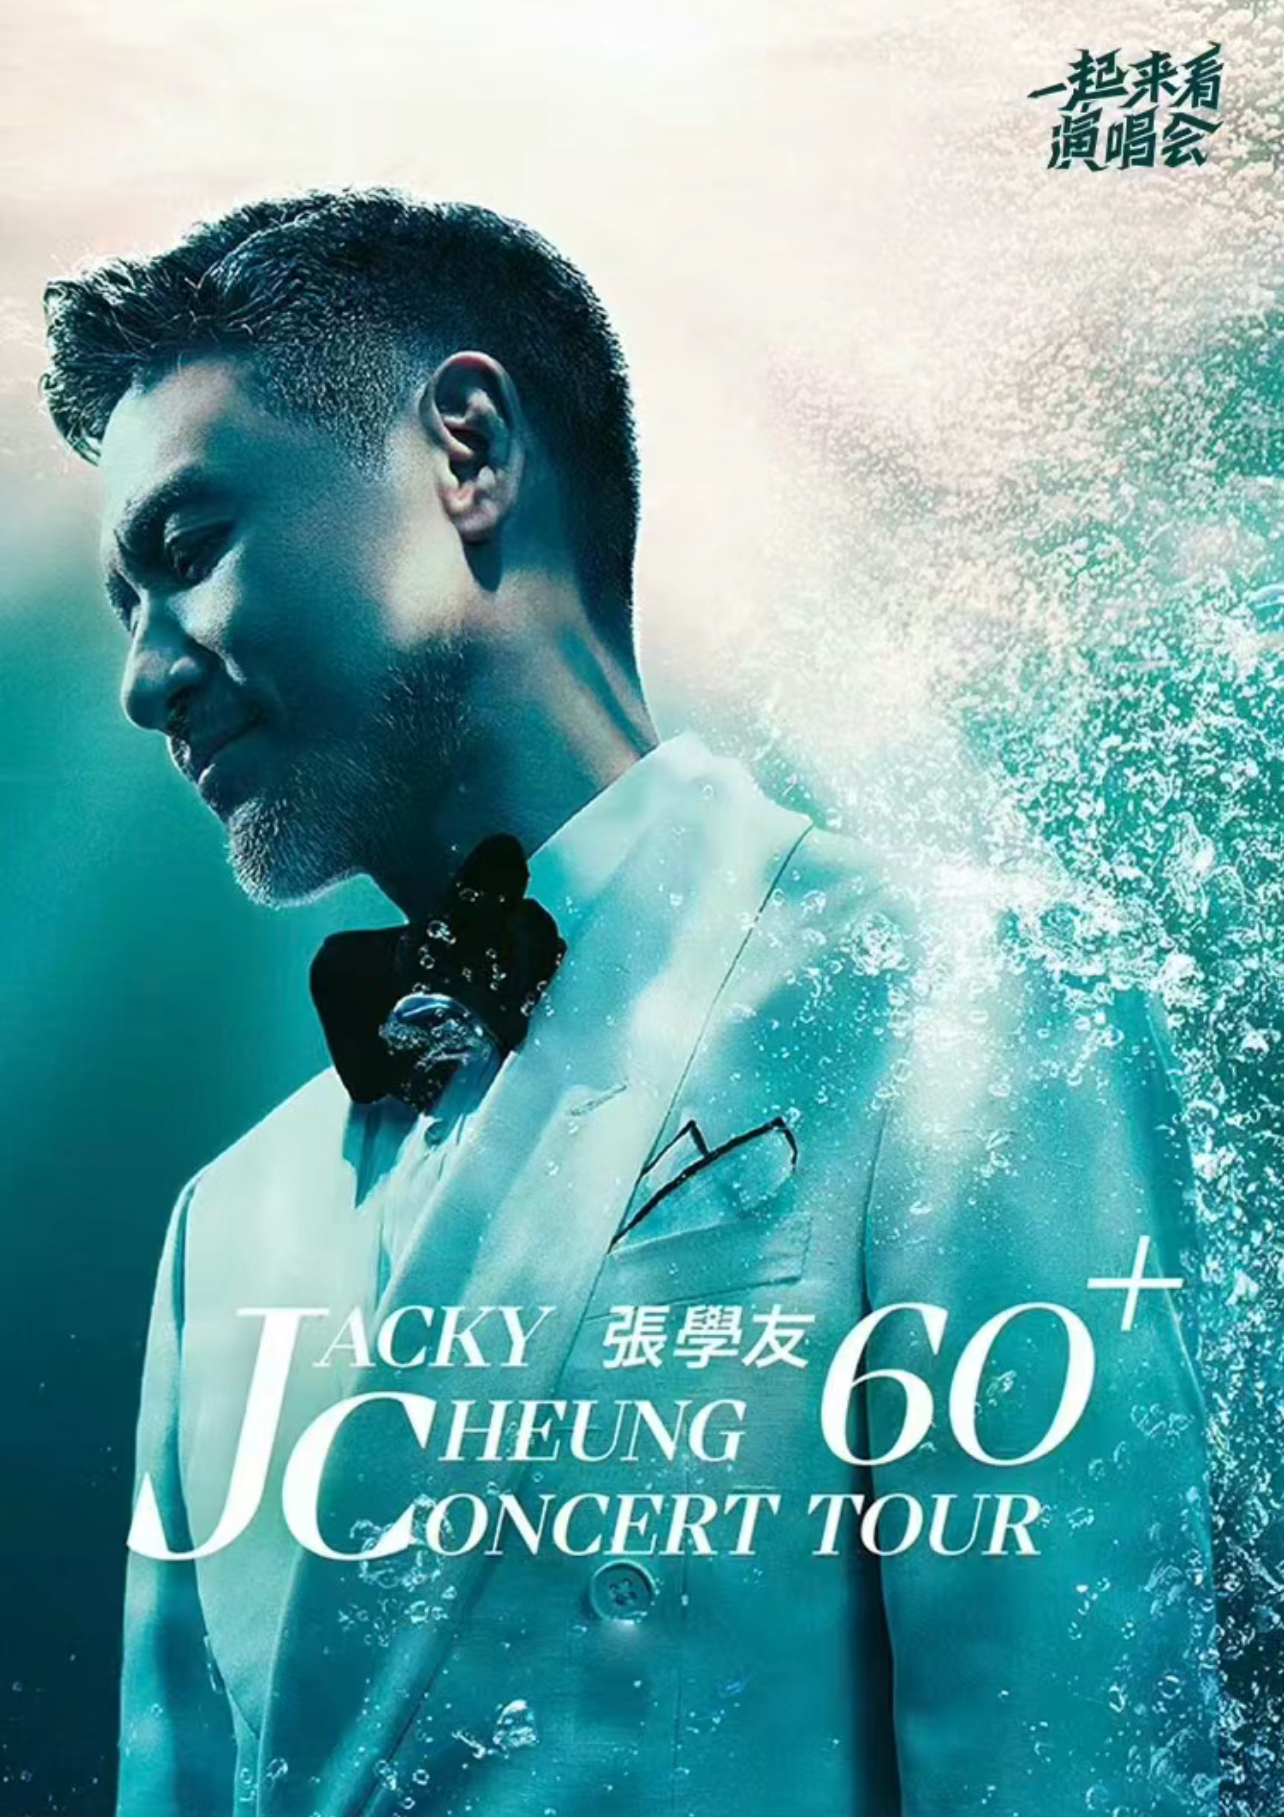 [杭州]JACKY CHEUNG 60+ CONCERT TOUR 张学友60+巡回演唱会-杭州站